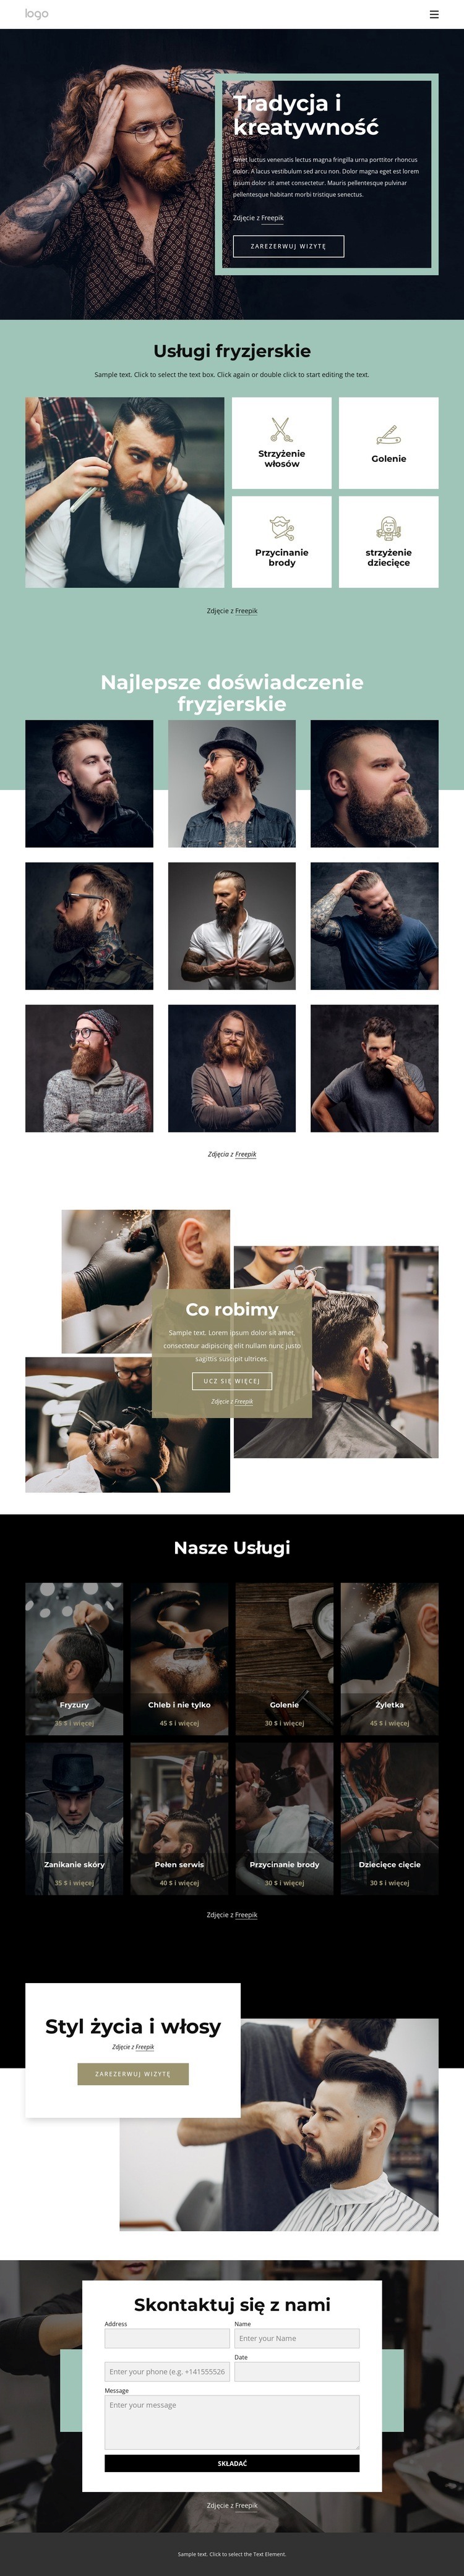 Ogólnodostępny salon fryzjerski Makieta strony internetowej